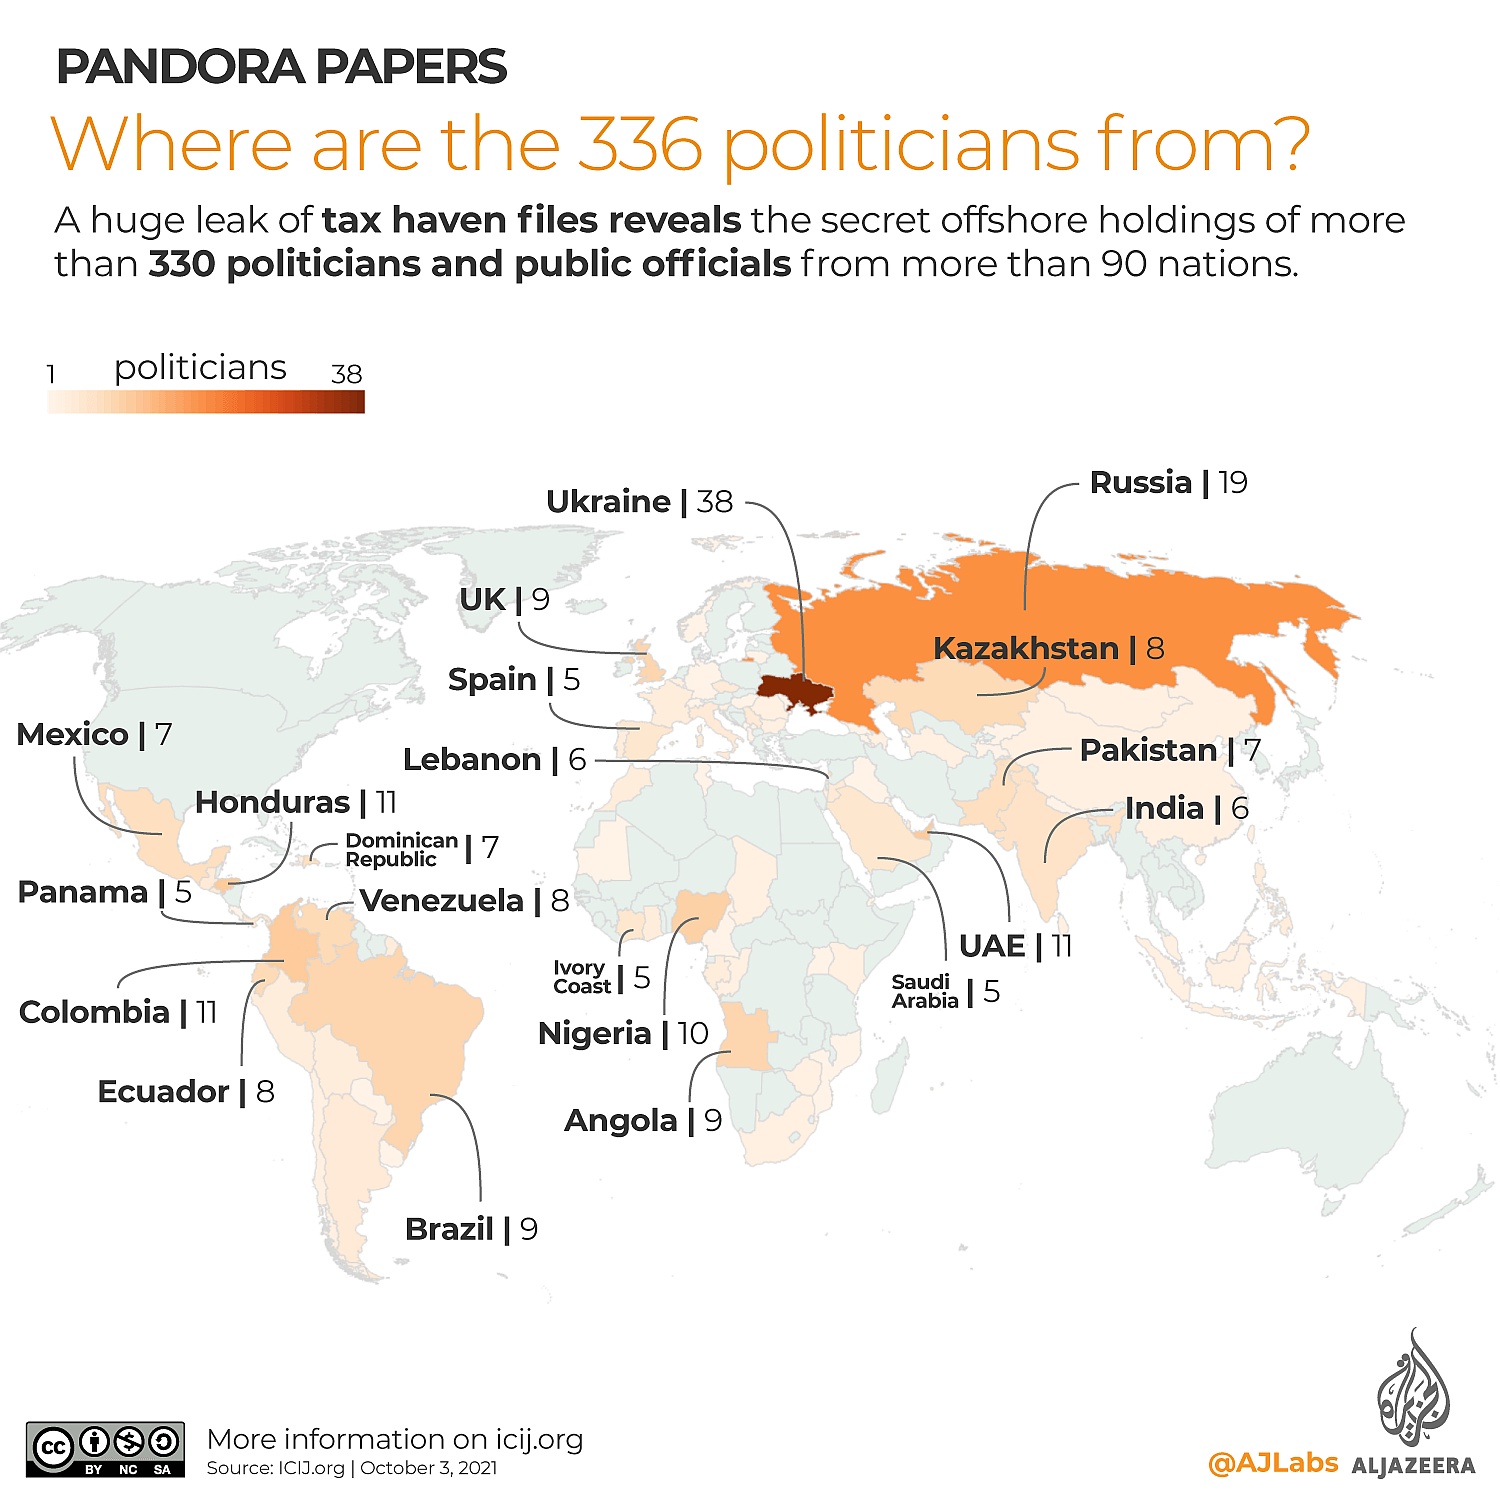 Skąd pochodzą politycy zamieszani w aferze Pandora Papers